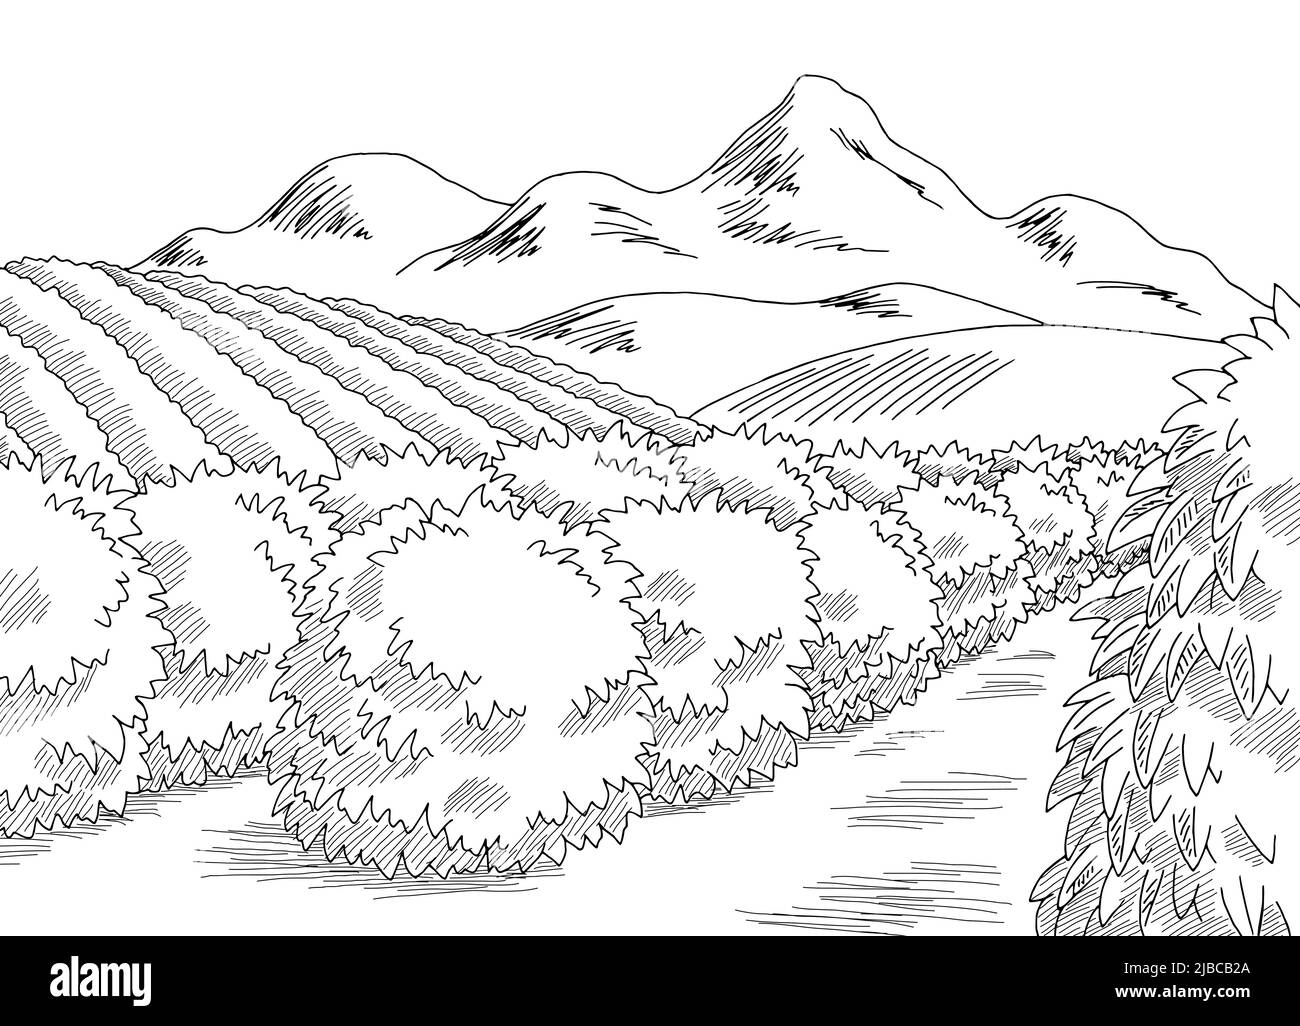 Image de plantation de café noir blanc paysage dessin illustration vecteur Illustration de Vecteur